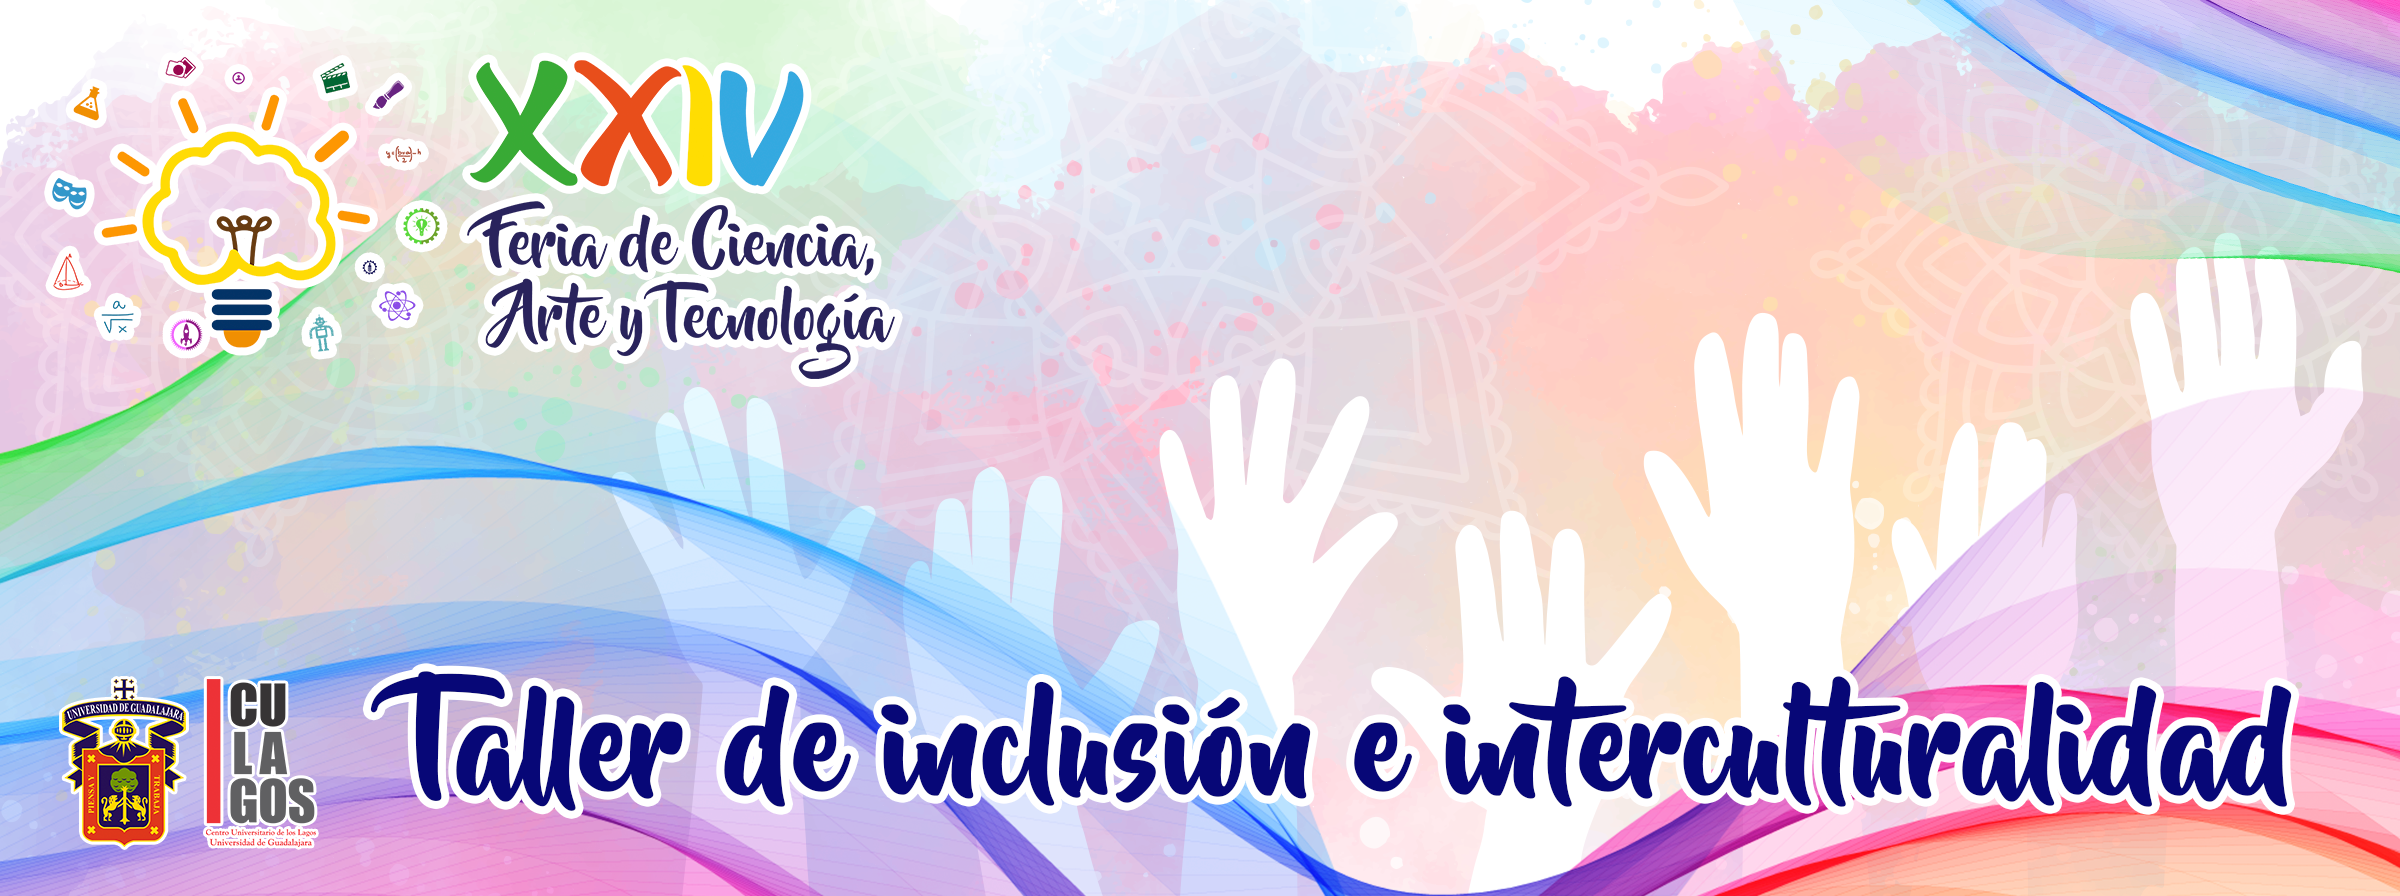 Banner - Taller de inclusión e interculturalidad